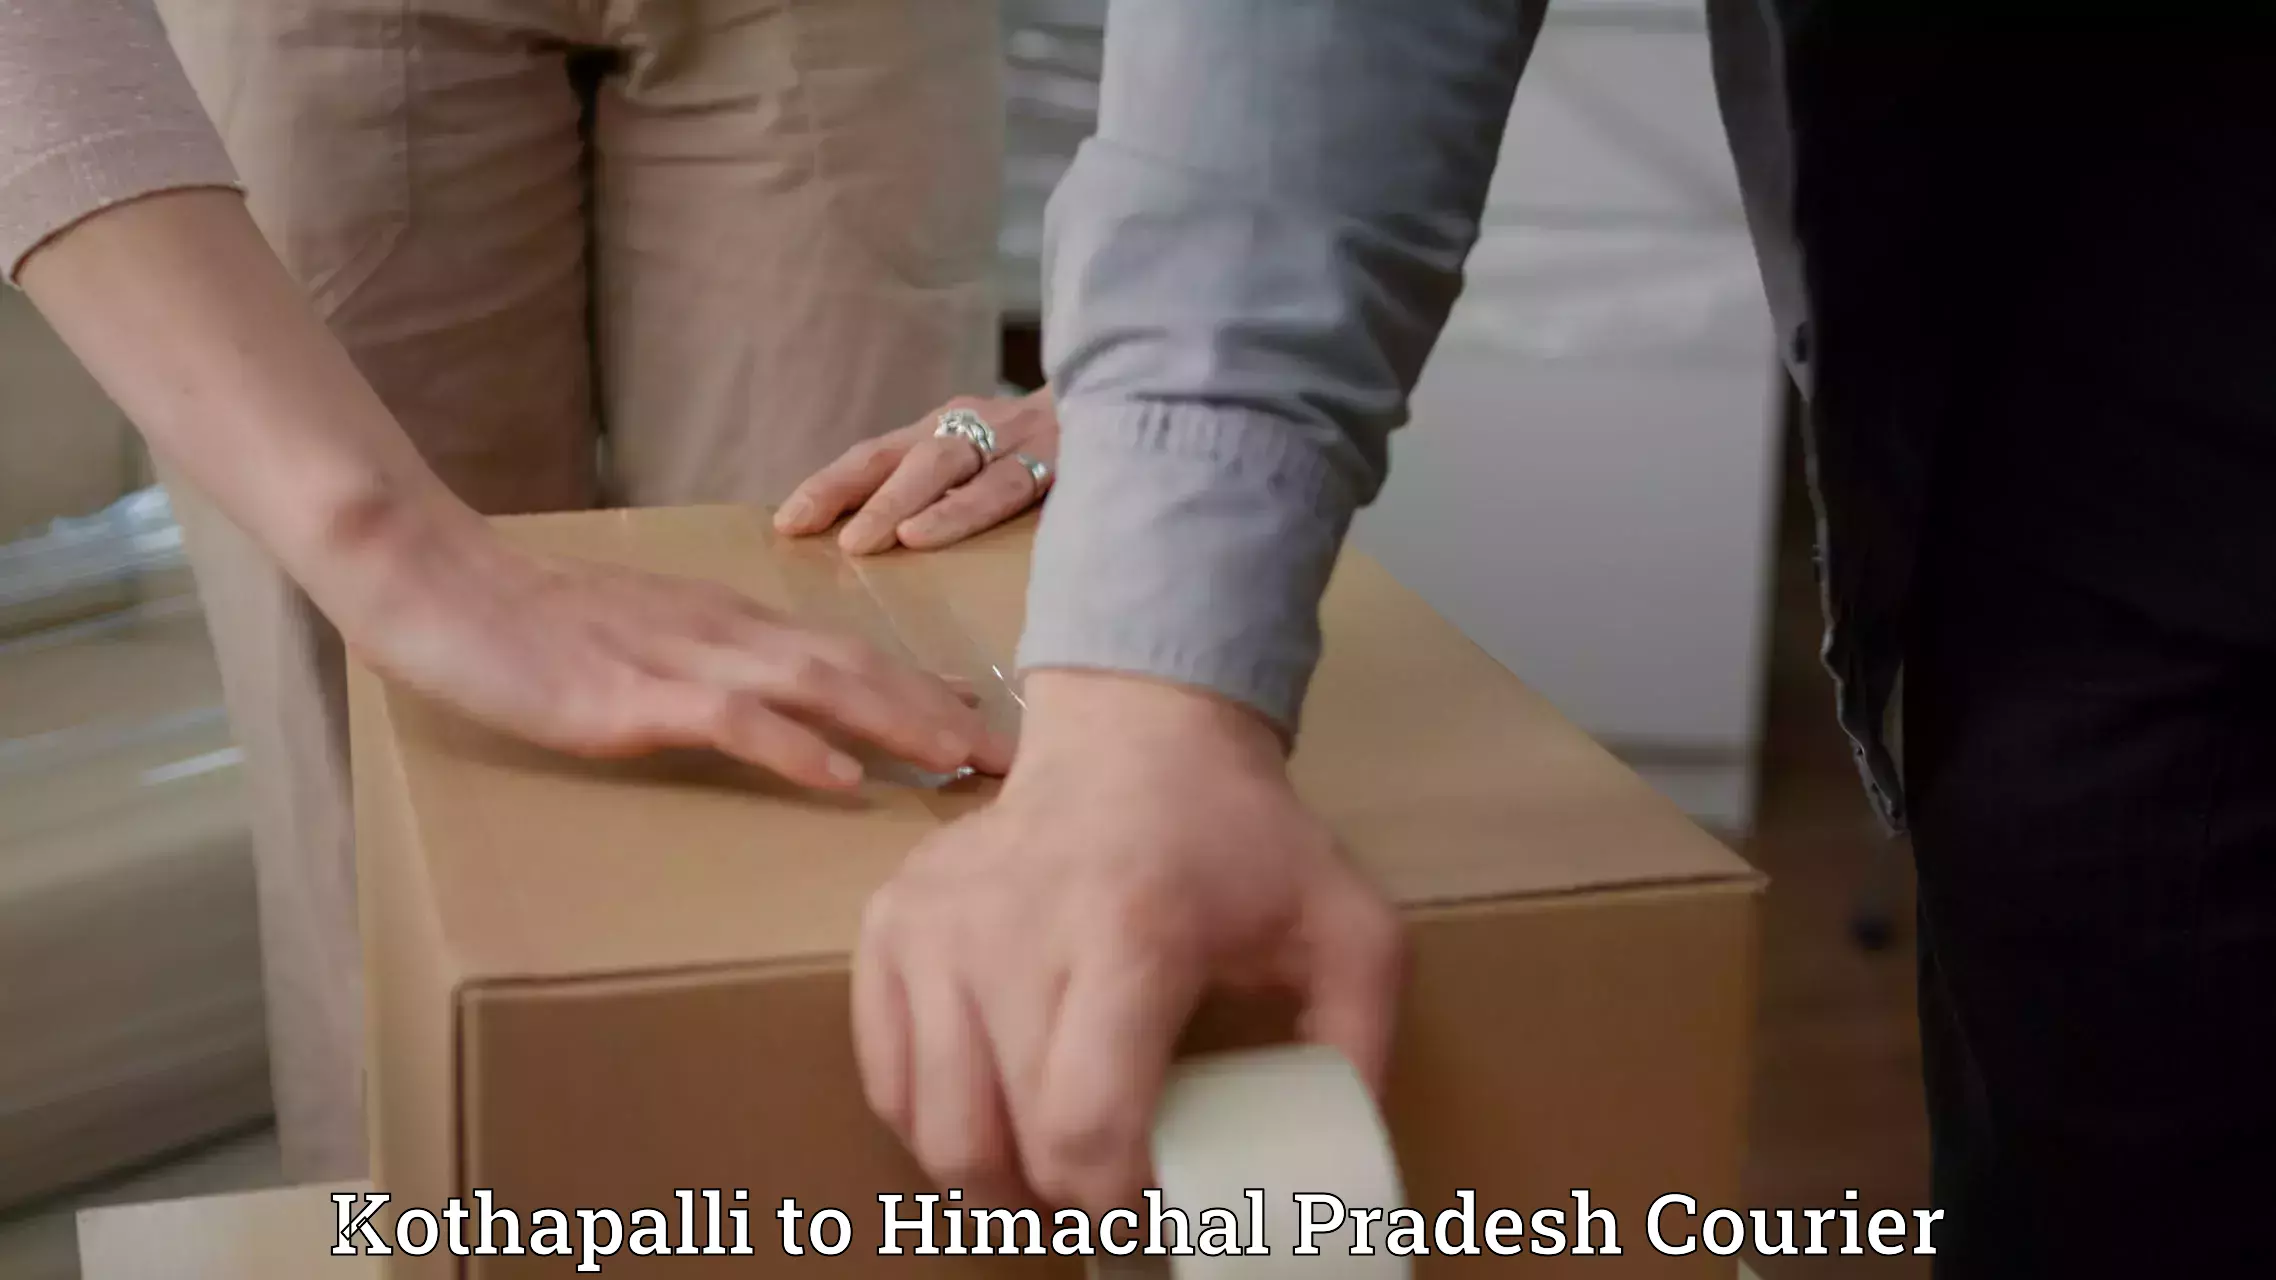 Tracking updates Kothapalli to Bilaspur Himachal Pradesh